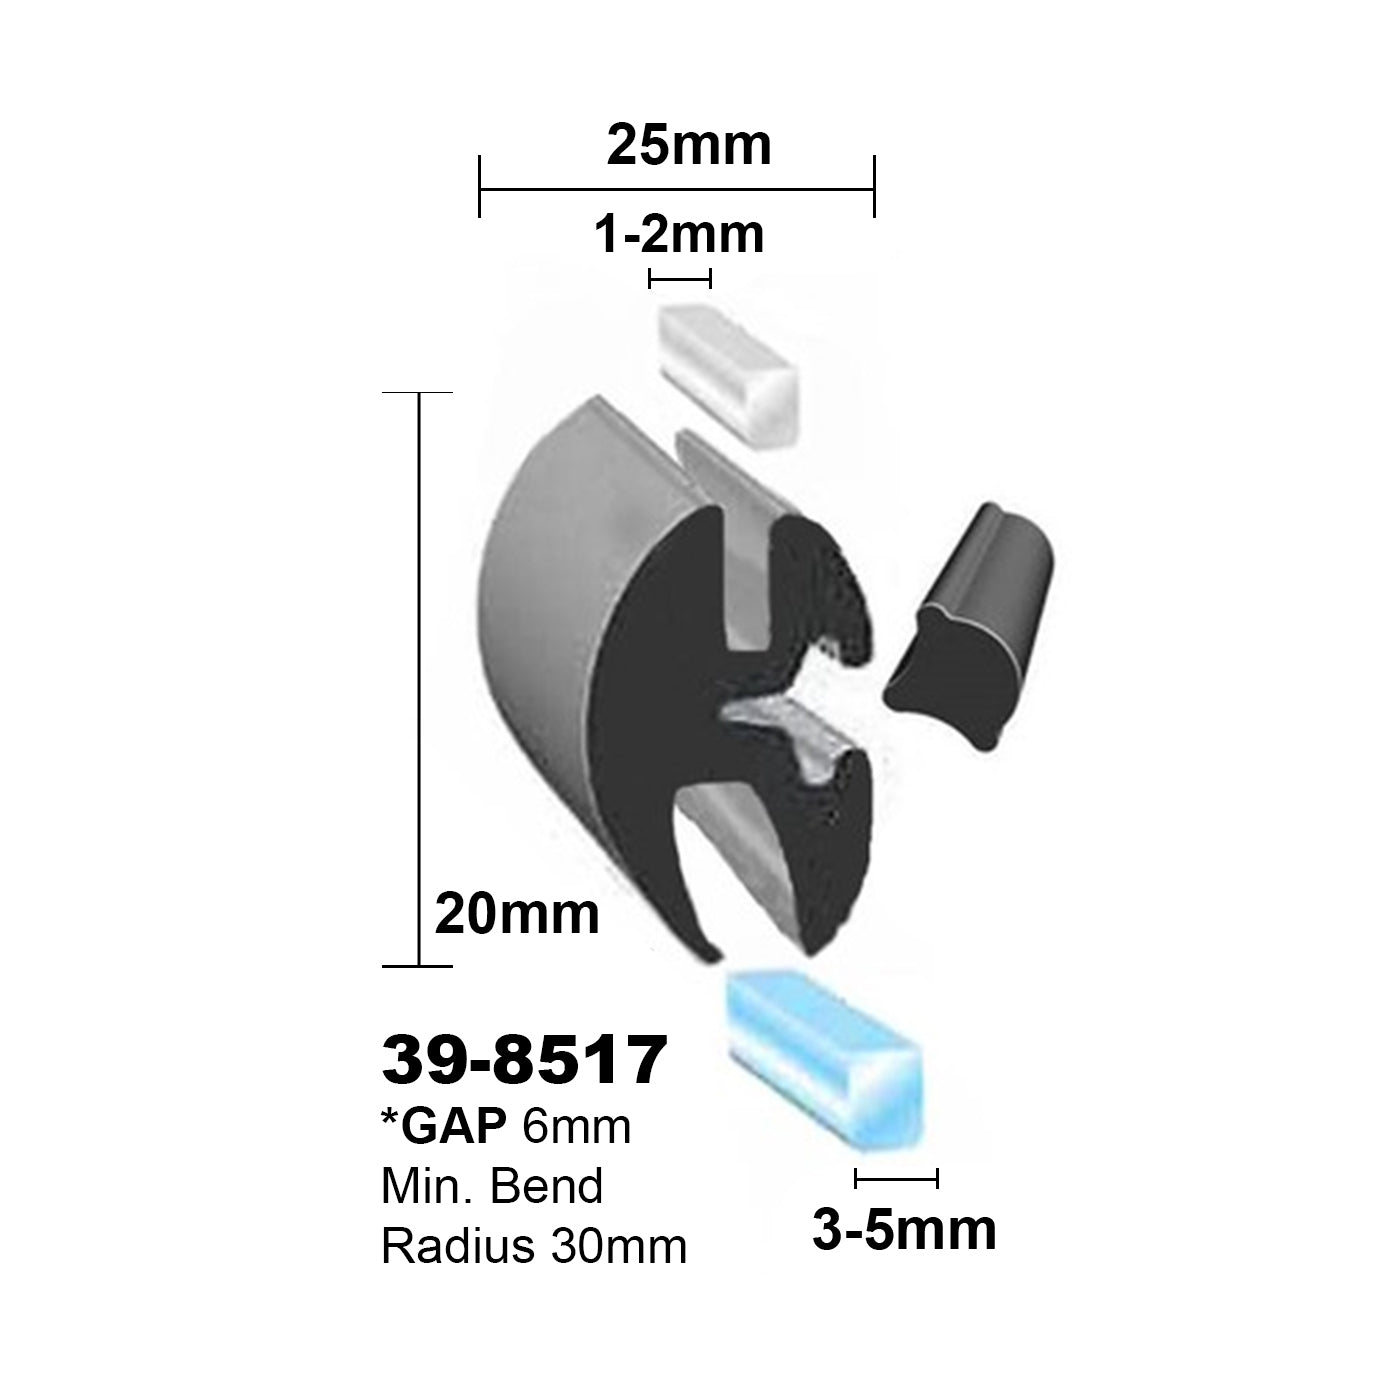 Windscreen Rubber 5mmG x 1-2mmM x 6mm Gap (inc Key) per mtr